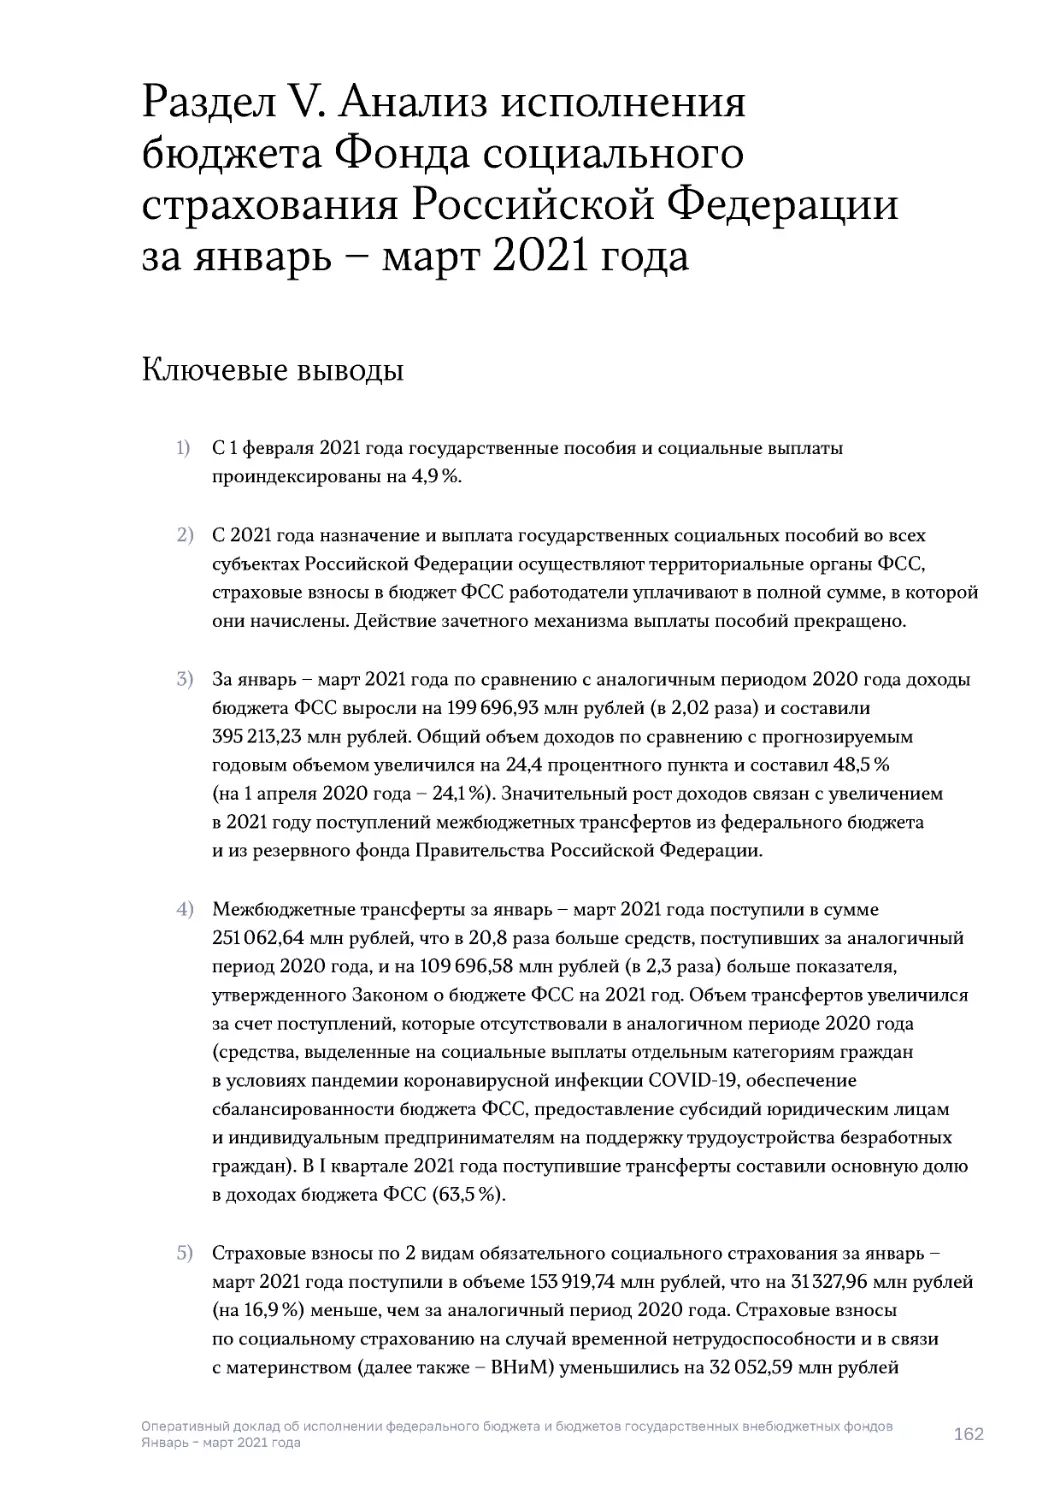 Раздел V. Анализ исполнения бюджета Фонда социального страхования Российской Федерации за январь – март 2021 года